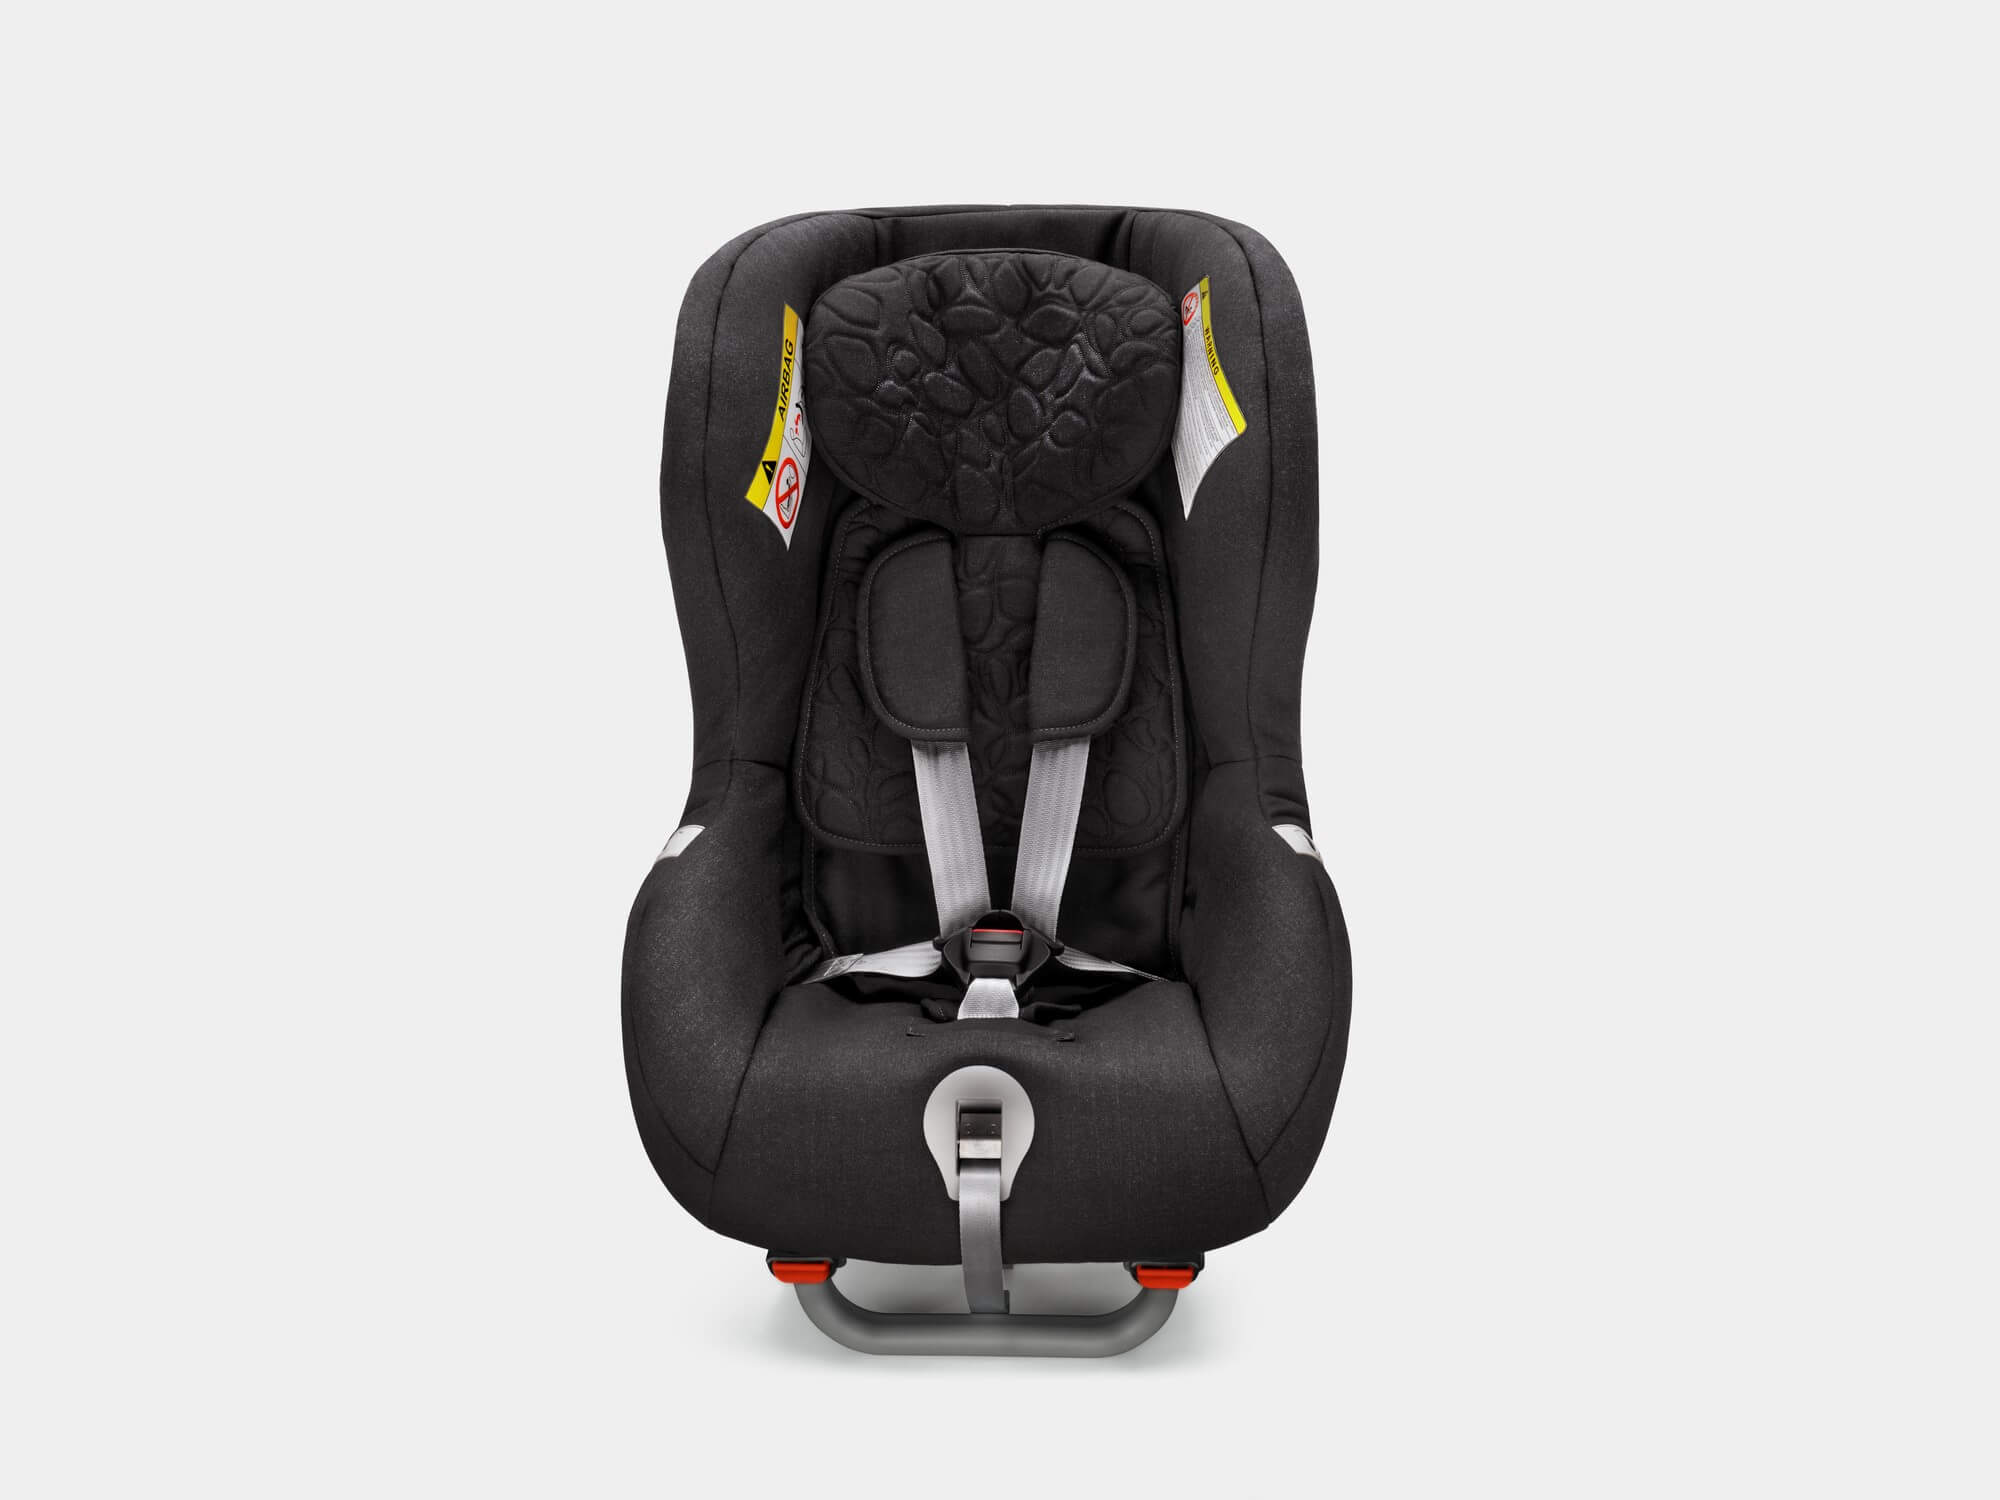 Dječja sjedalica Volvo okrenuta unatrag za djecu između 9–25 kg, 9 mjeseci–6 godina.